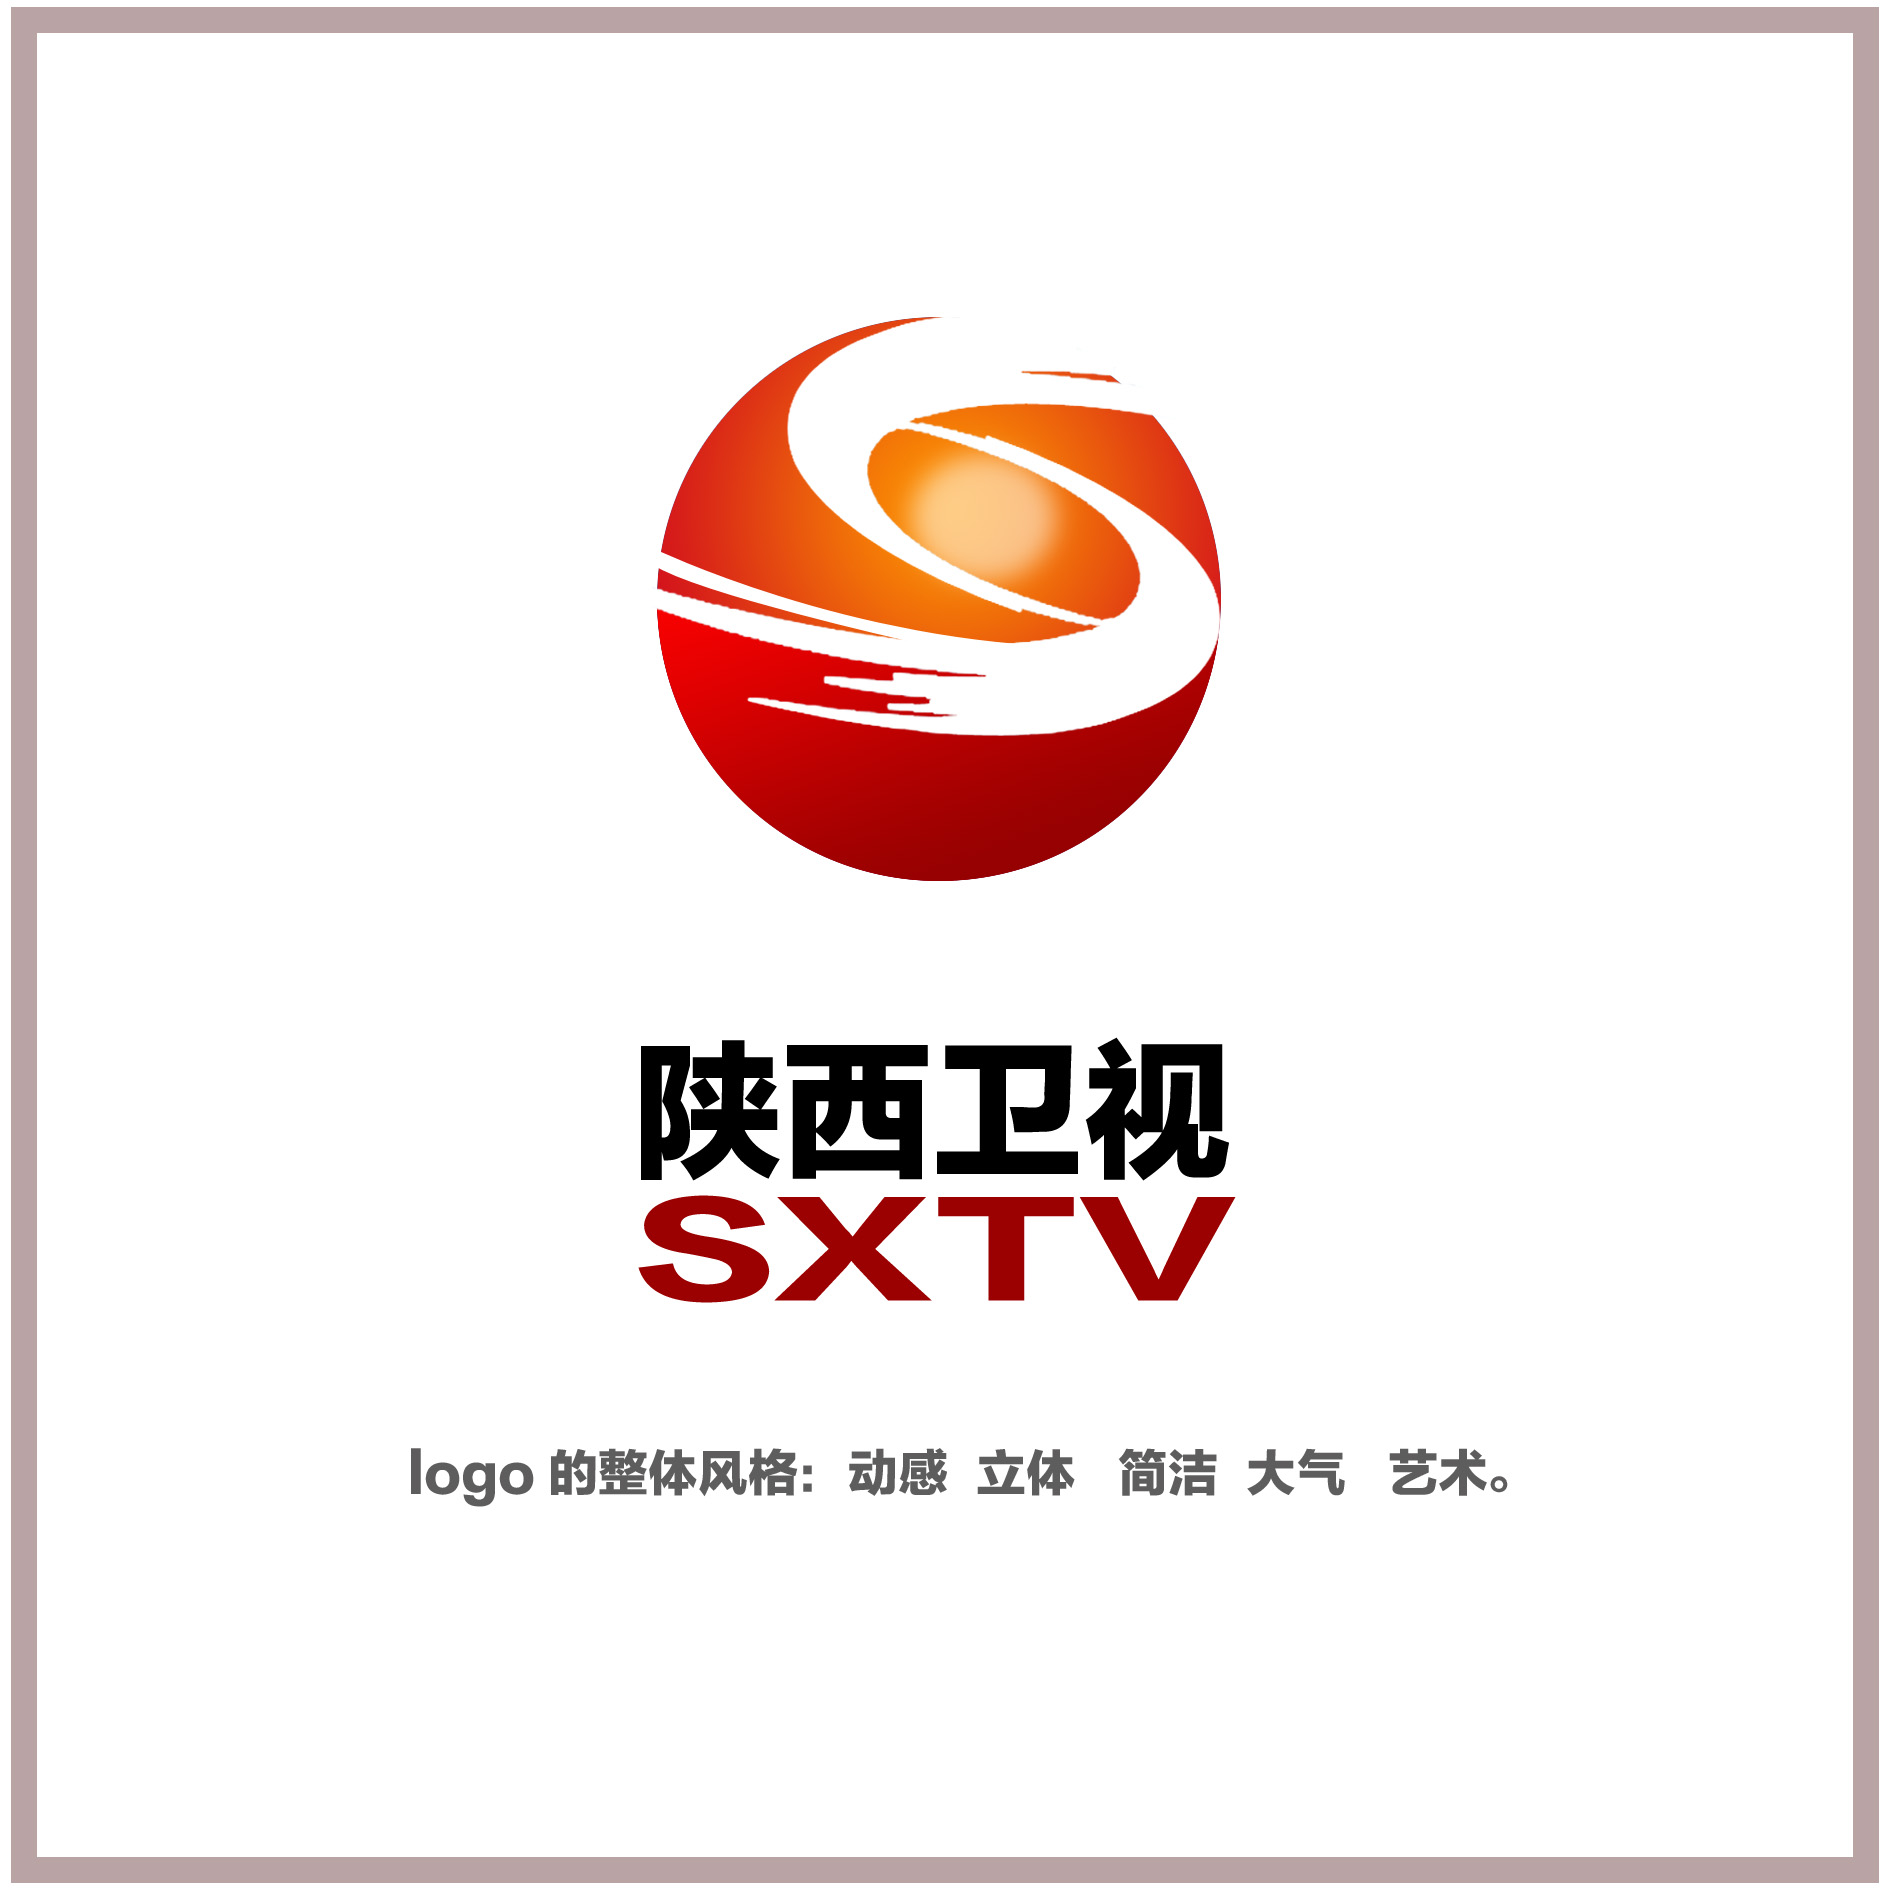 万元重金:陕西广播电视台征台标